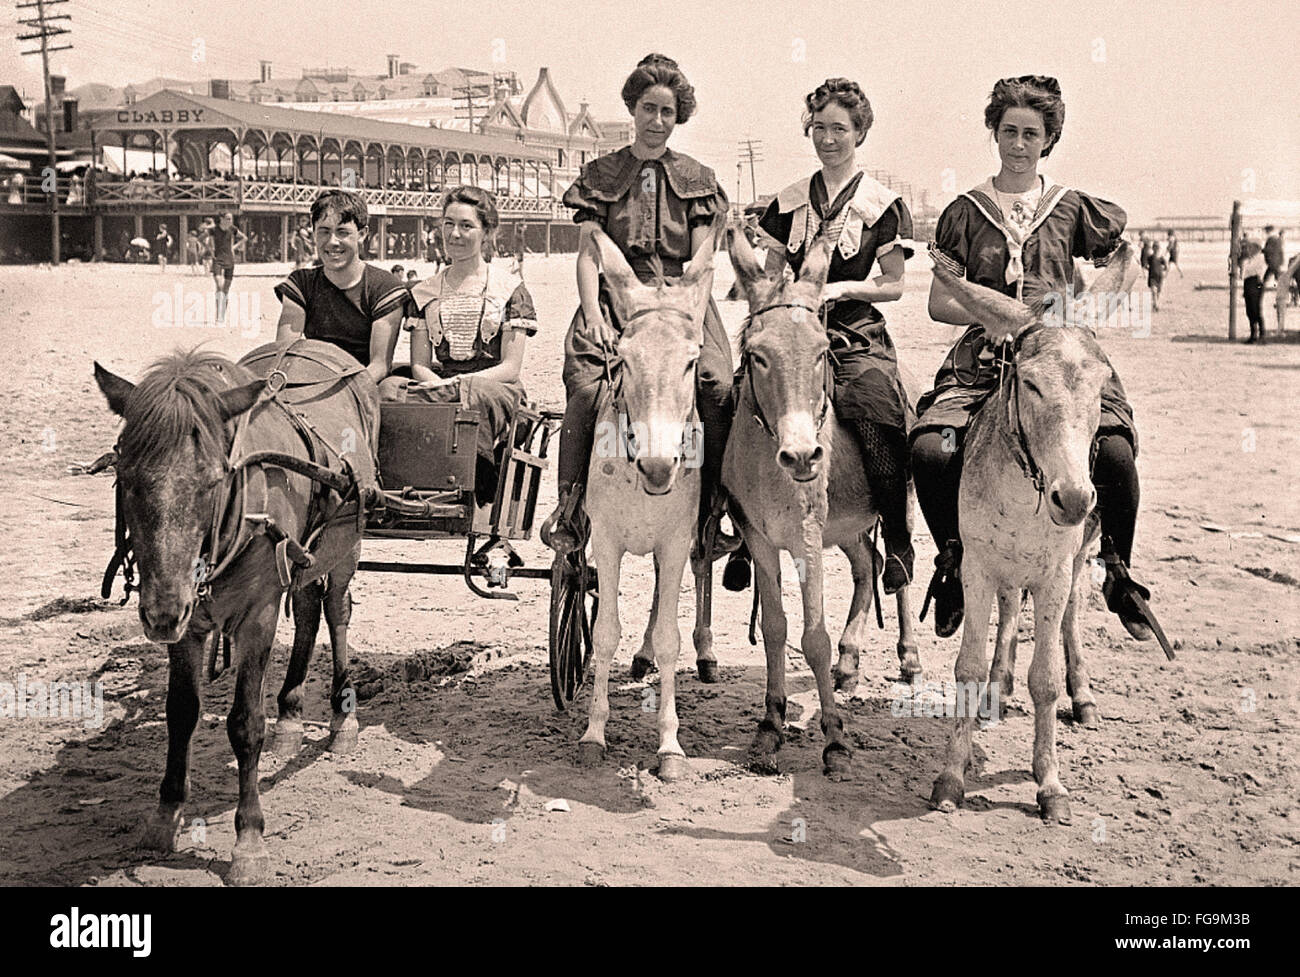 Les jeunes sur mule sur une plage Banque D'Images